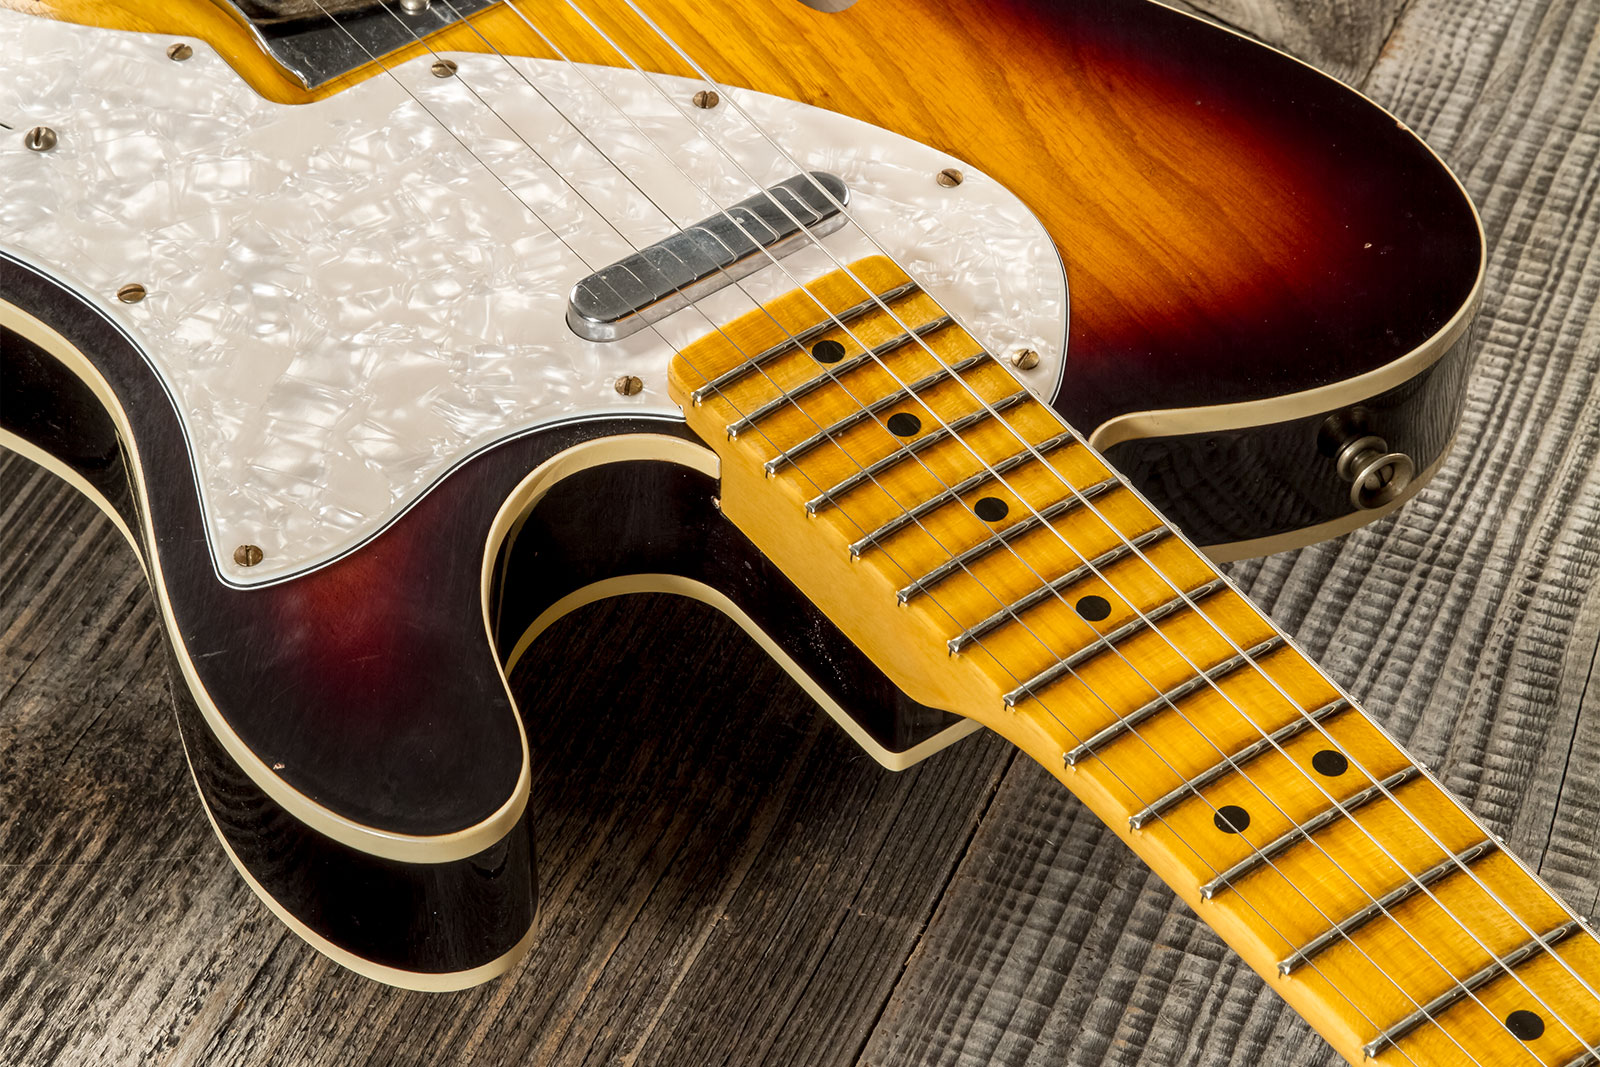 Fender Custom Shop Tele Thinline 50s Mn #cz574212 - Journeyman Relic Aged 2-color Sunburst - Guitarra eléctrica con forma de tel - Variation 5